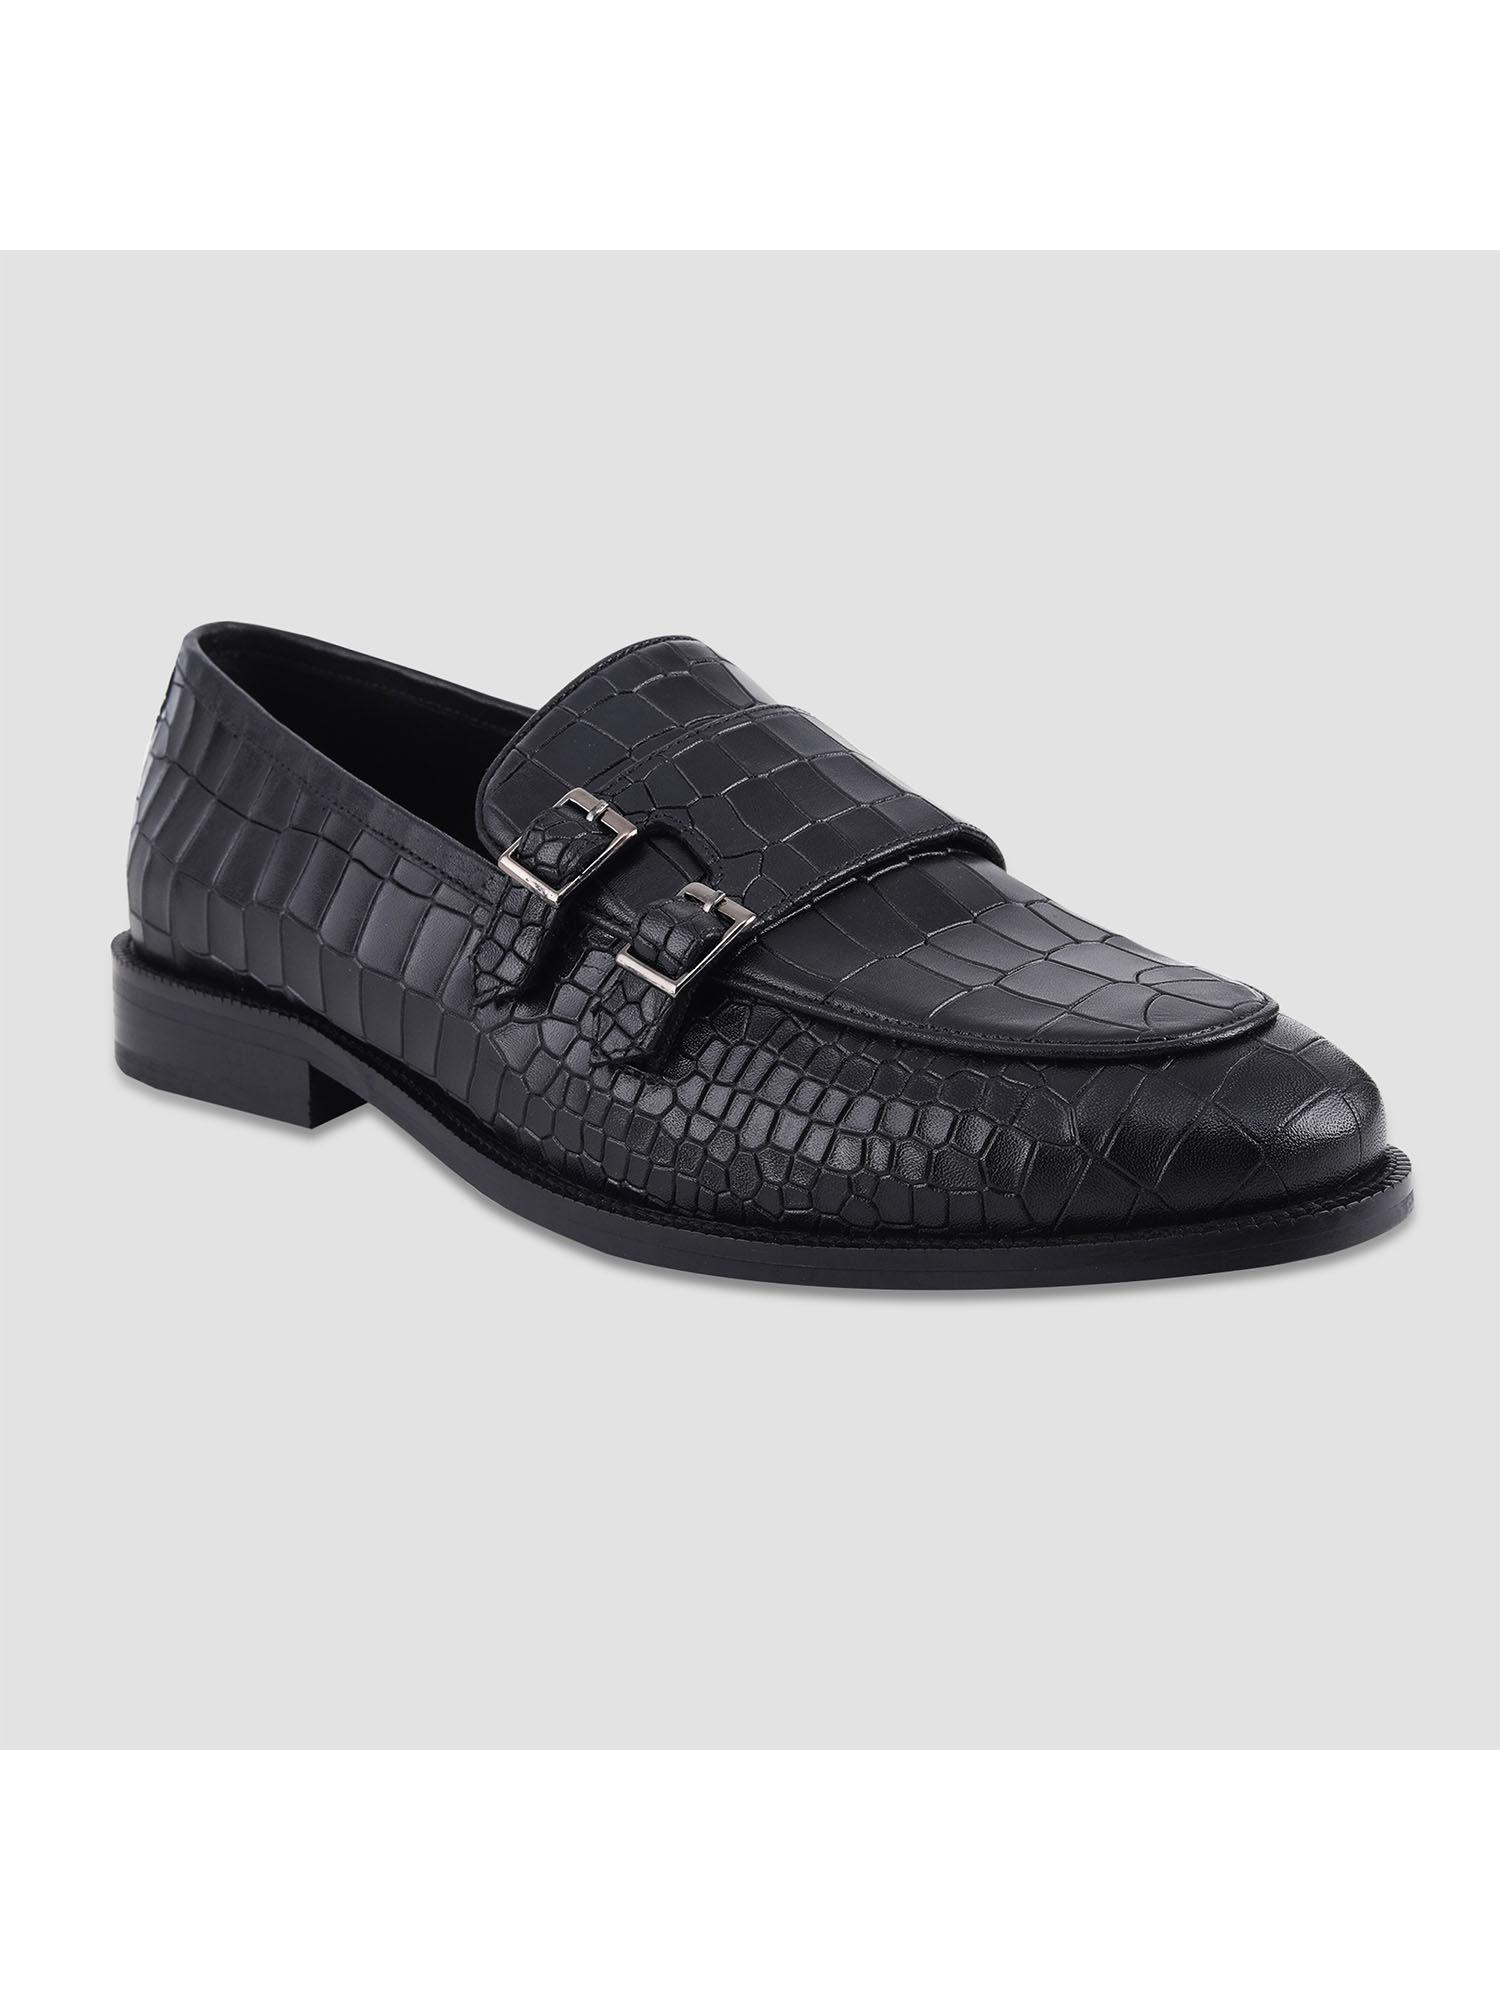 black leather loafer for men